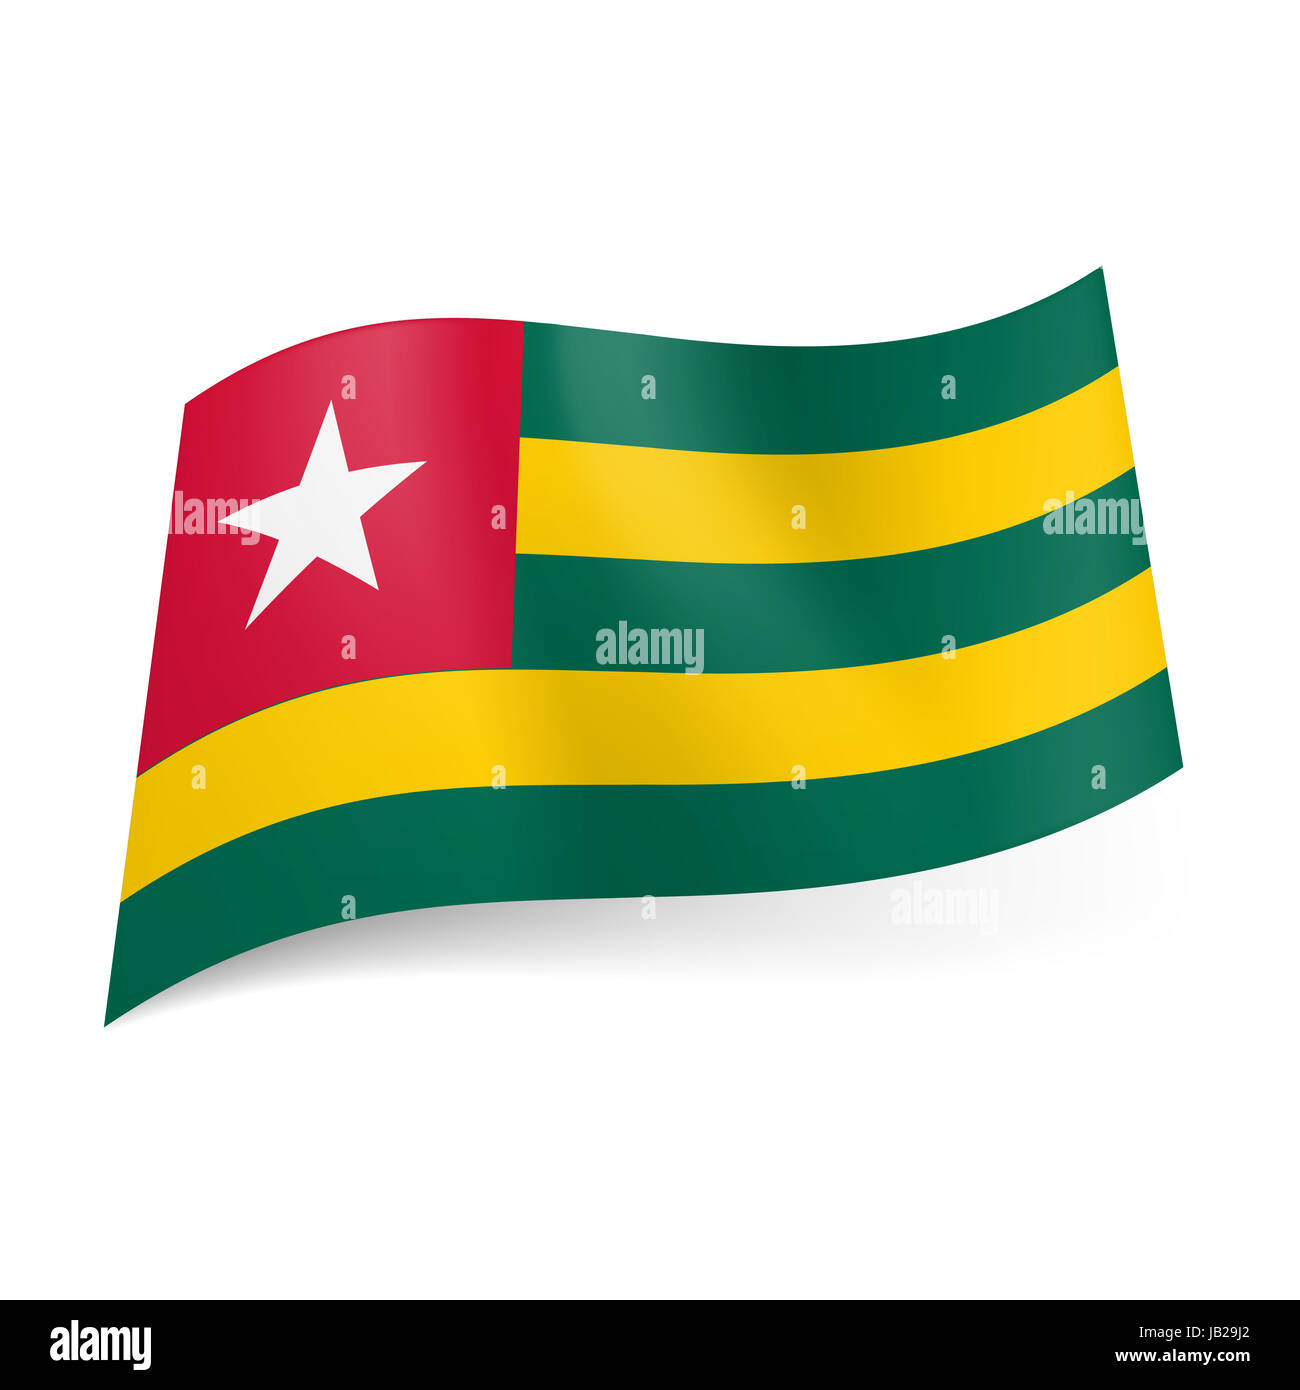 Nationalflagge Von Togo Grunen Und Gelben Querstreifen Rotes Quadrat Mit Weisser Stern In Der Oberen Linken Ecke Stockfotografie Alamy